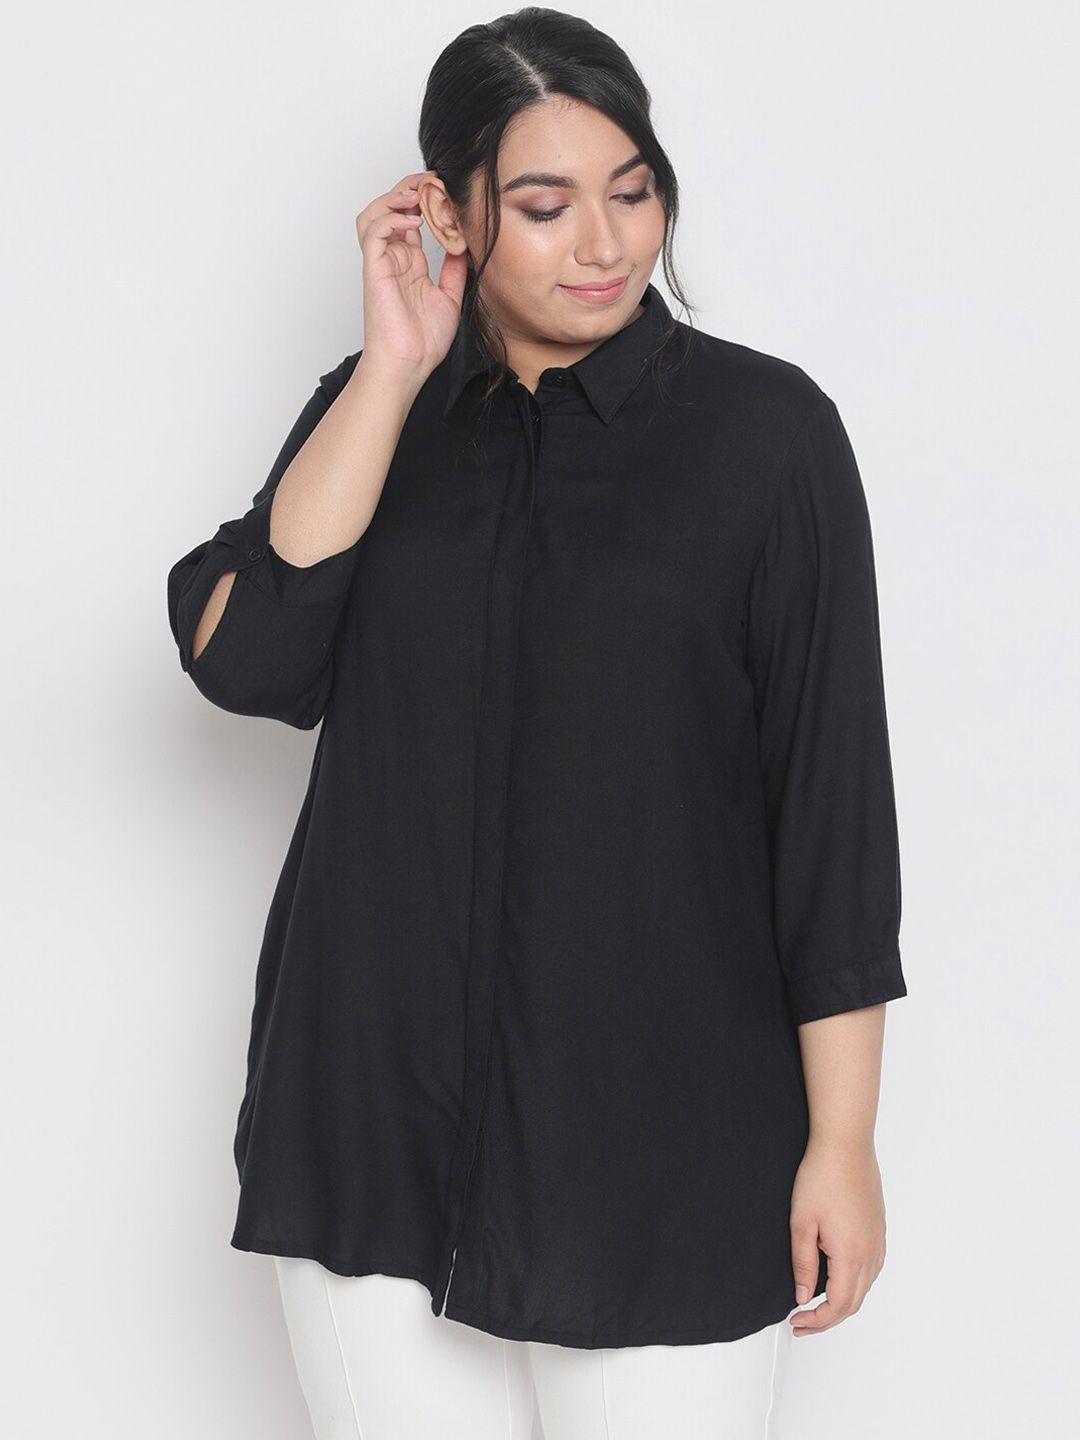 amydus women plus size black solid shirt style top